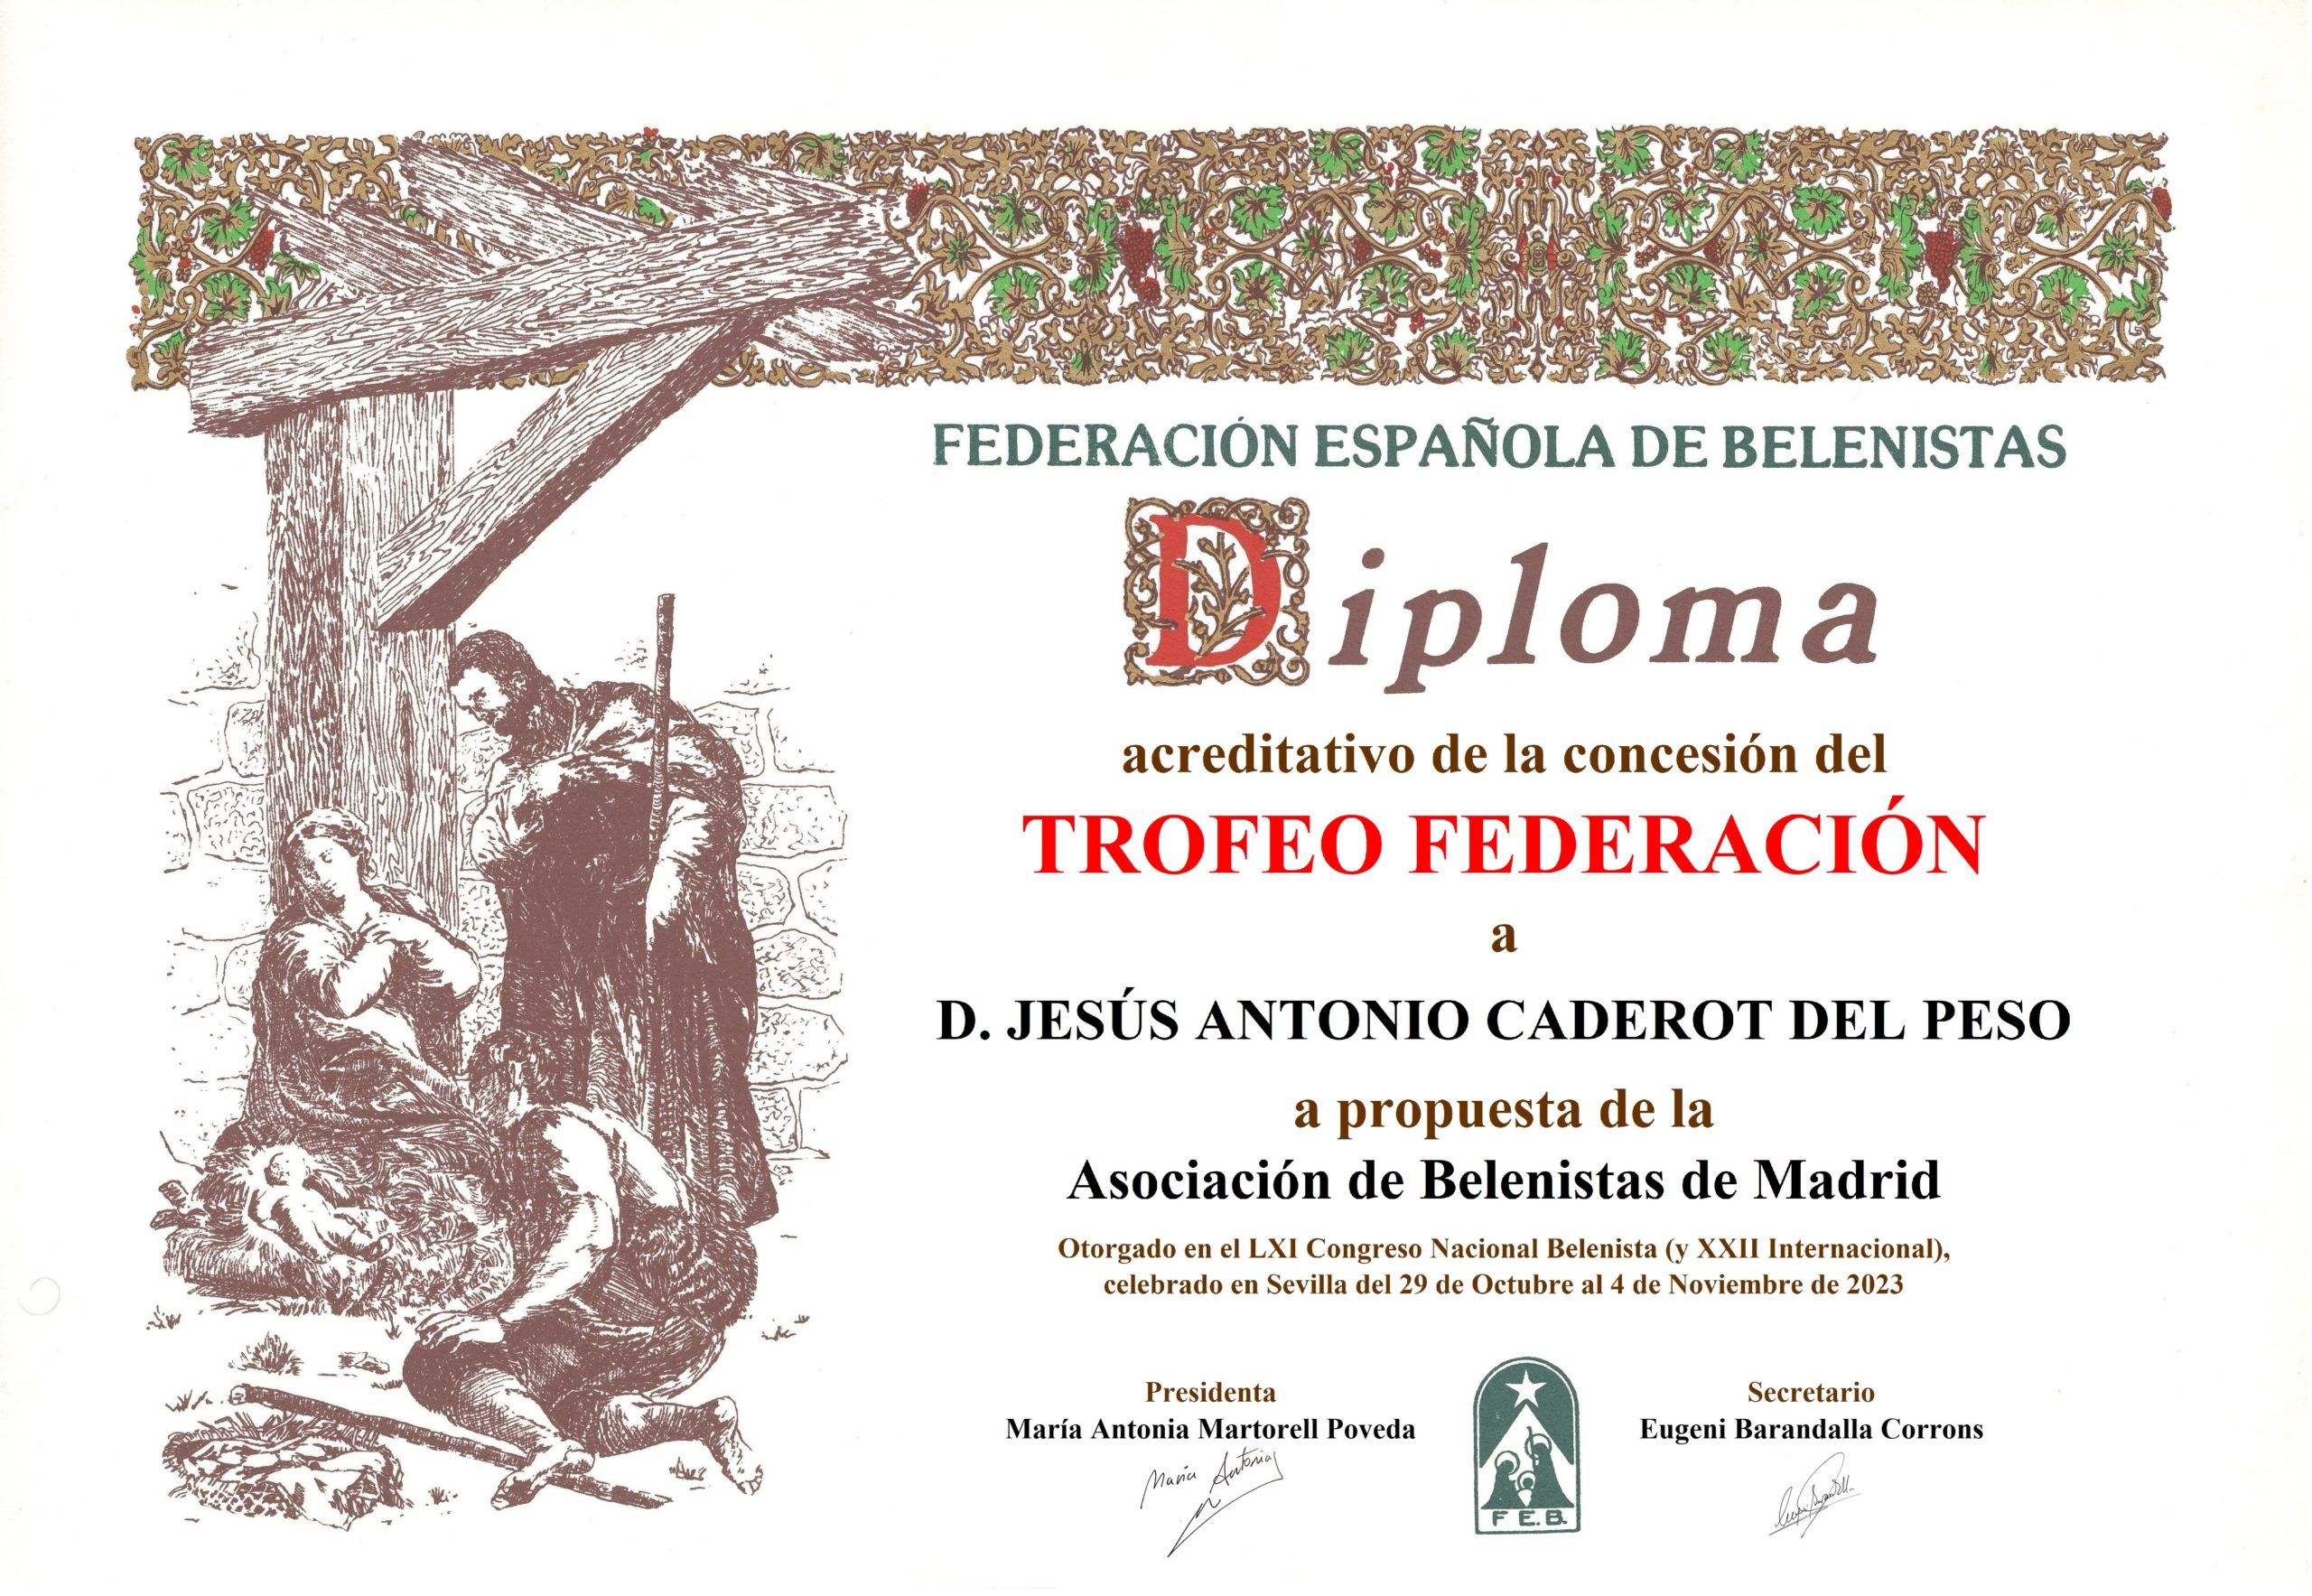 Jesús Antonio Caderot del Peso - Título/Diploma Trofeo FEB 2023